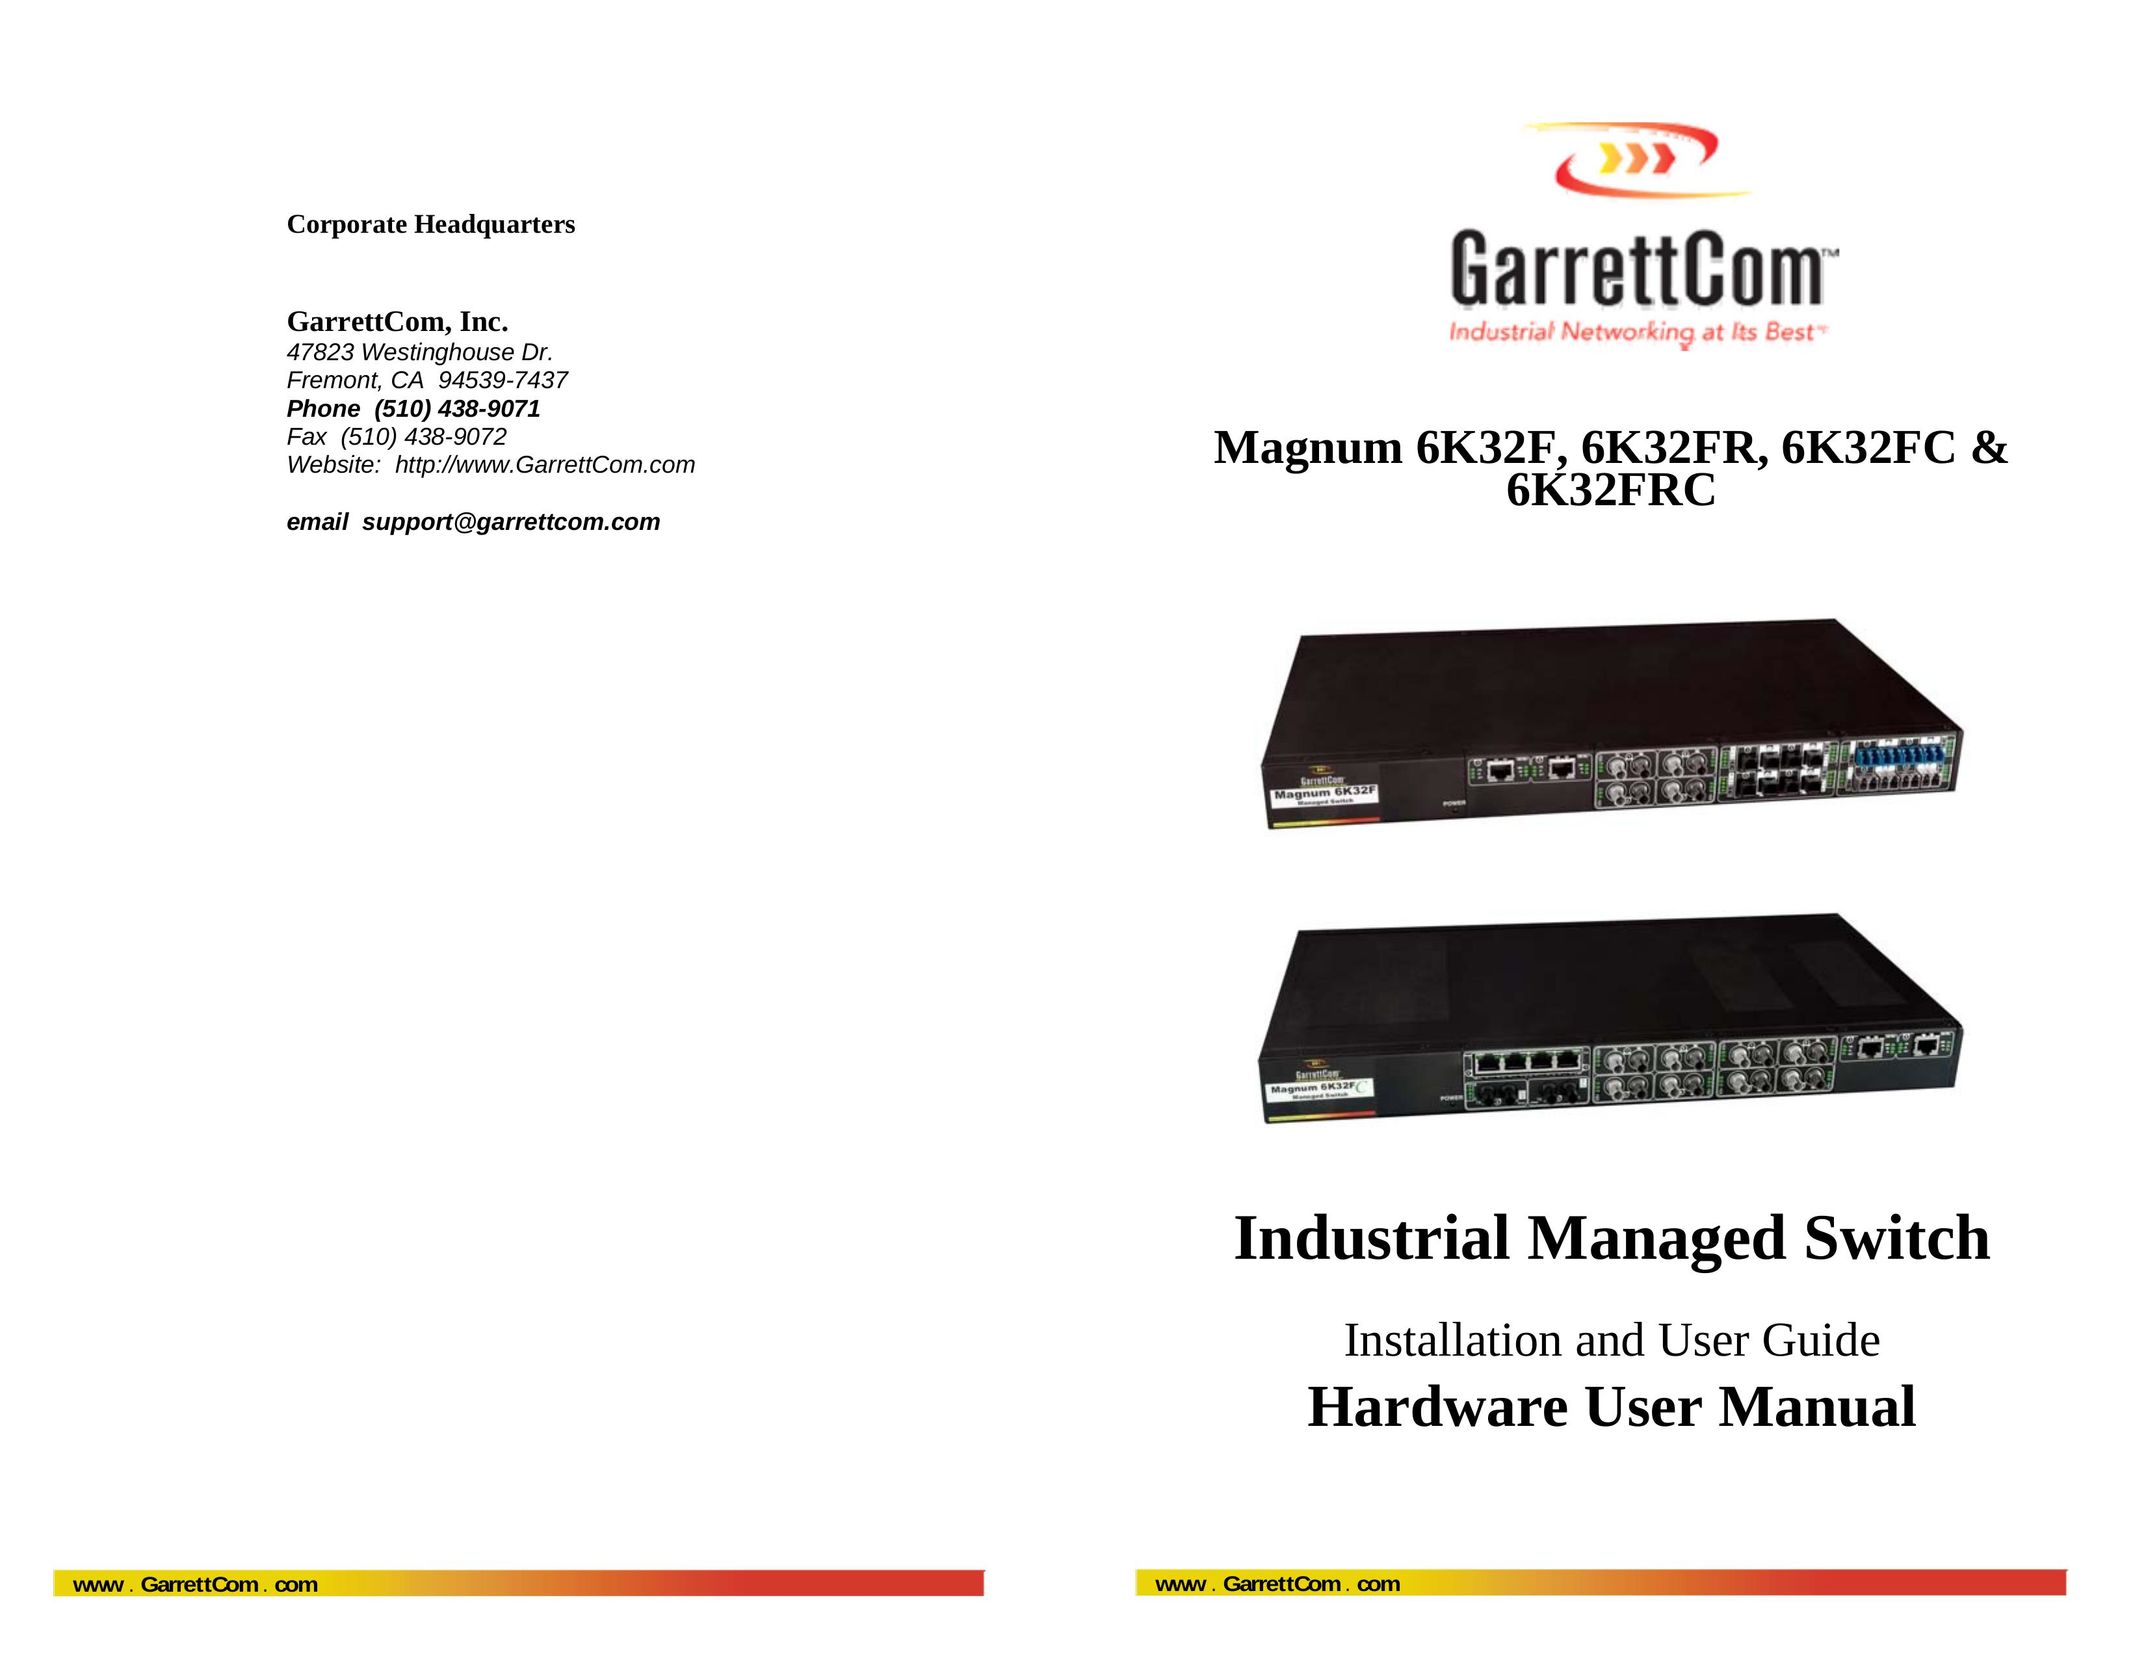 GarrettCom 6K32FC Network Router User Manual